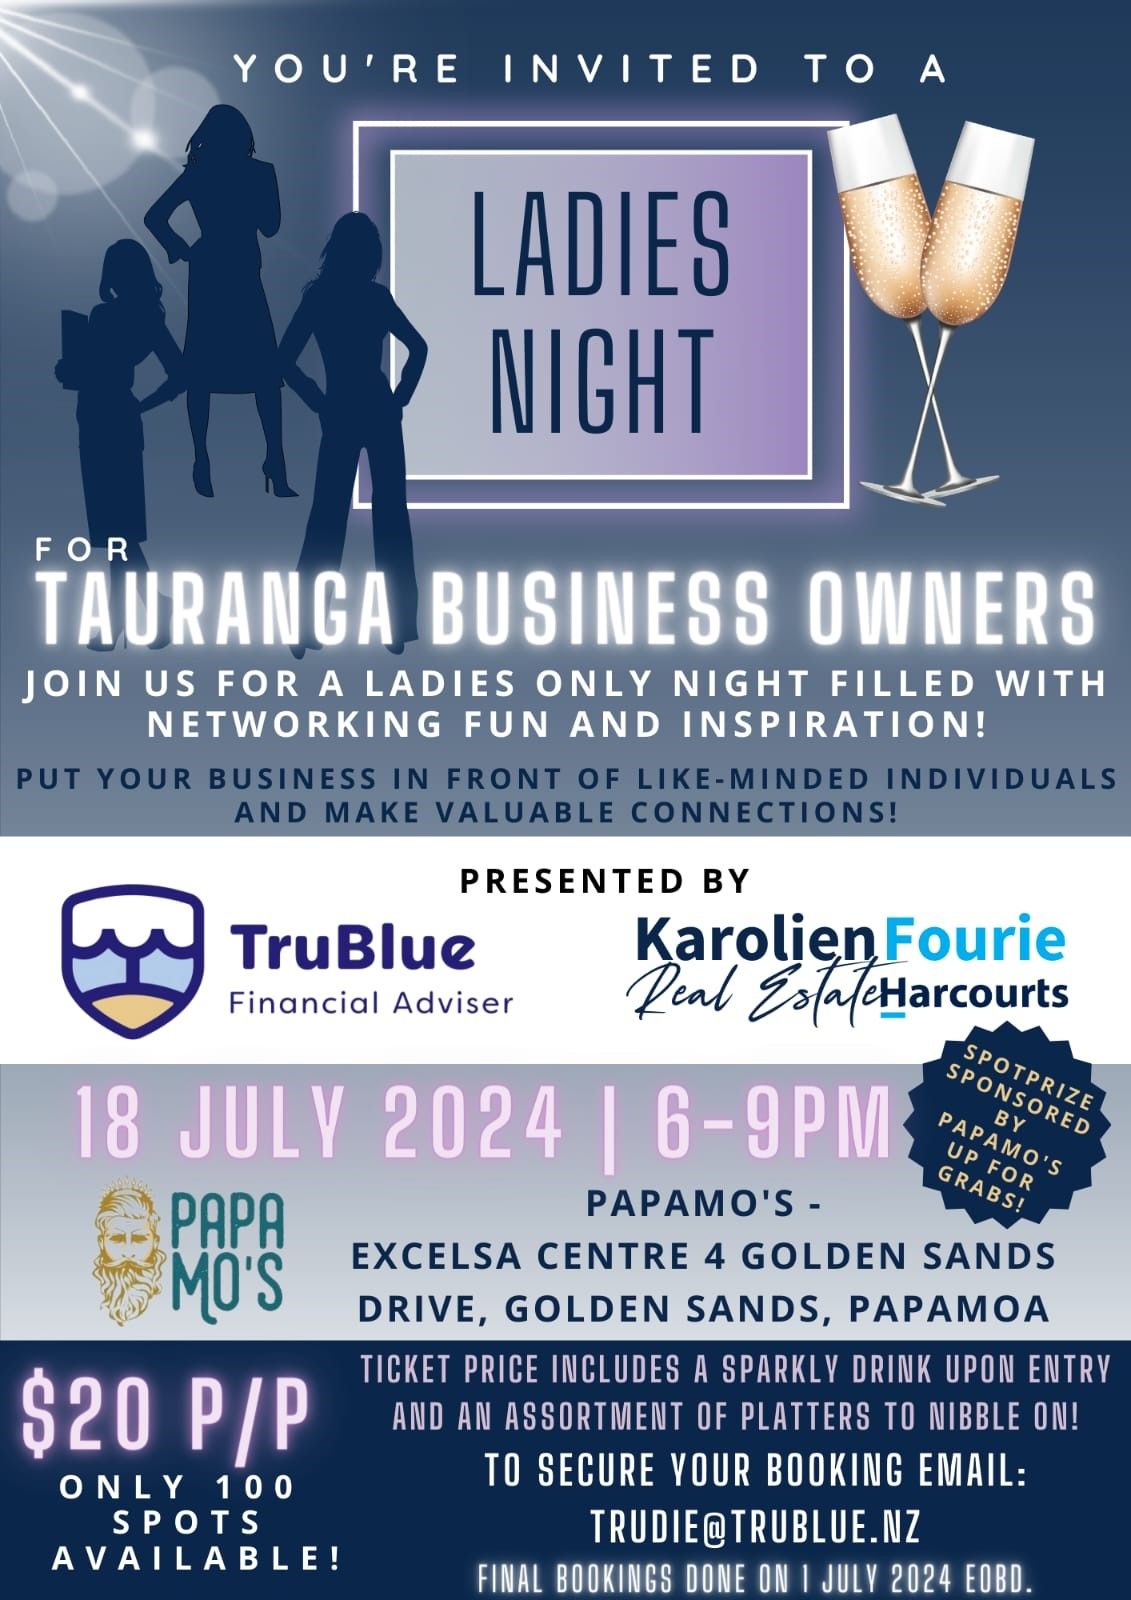 Ladies night - Tauranga Business owners